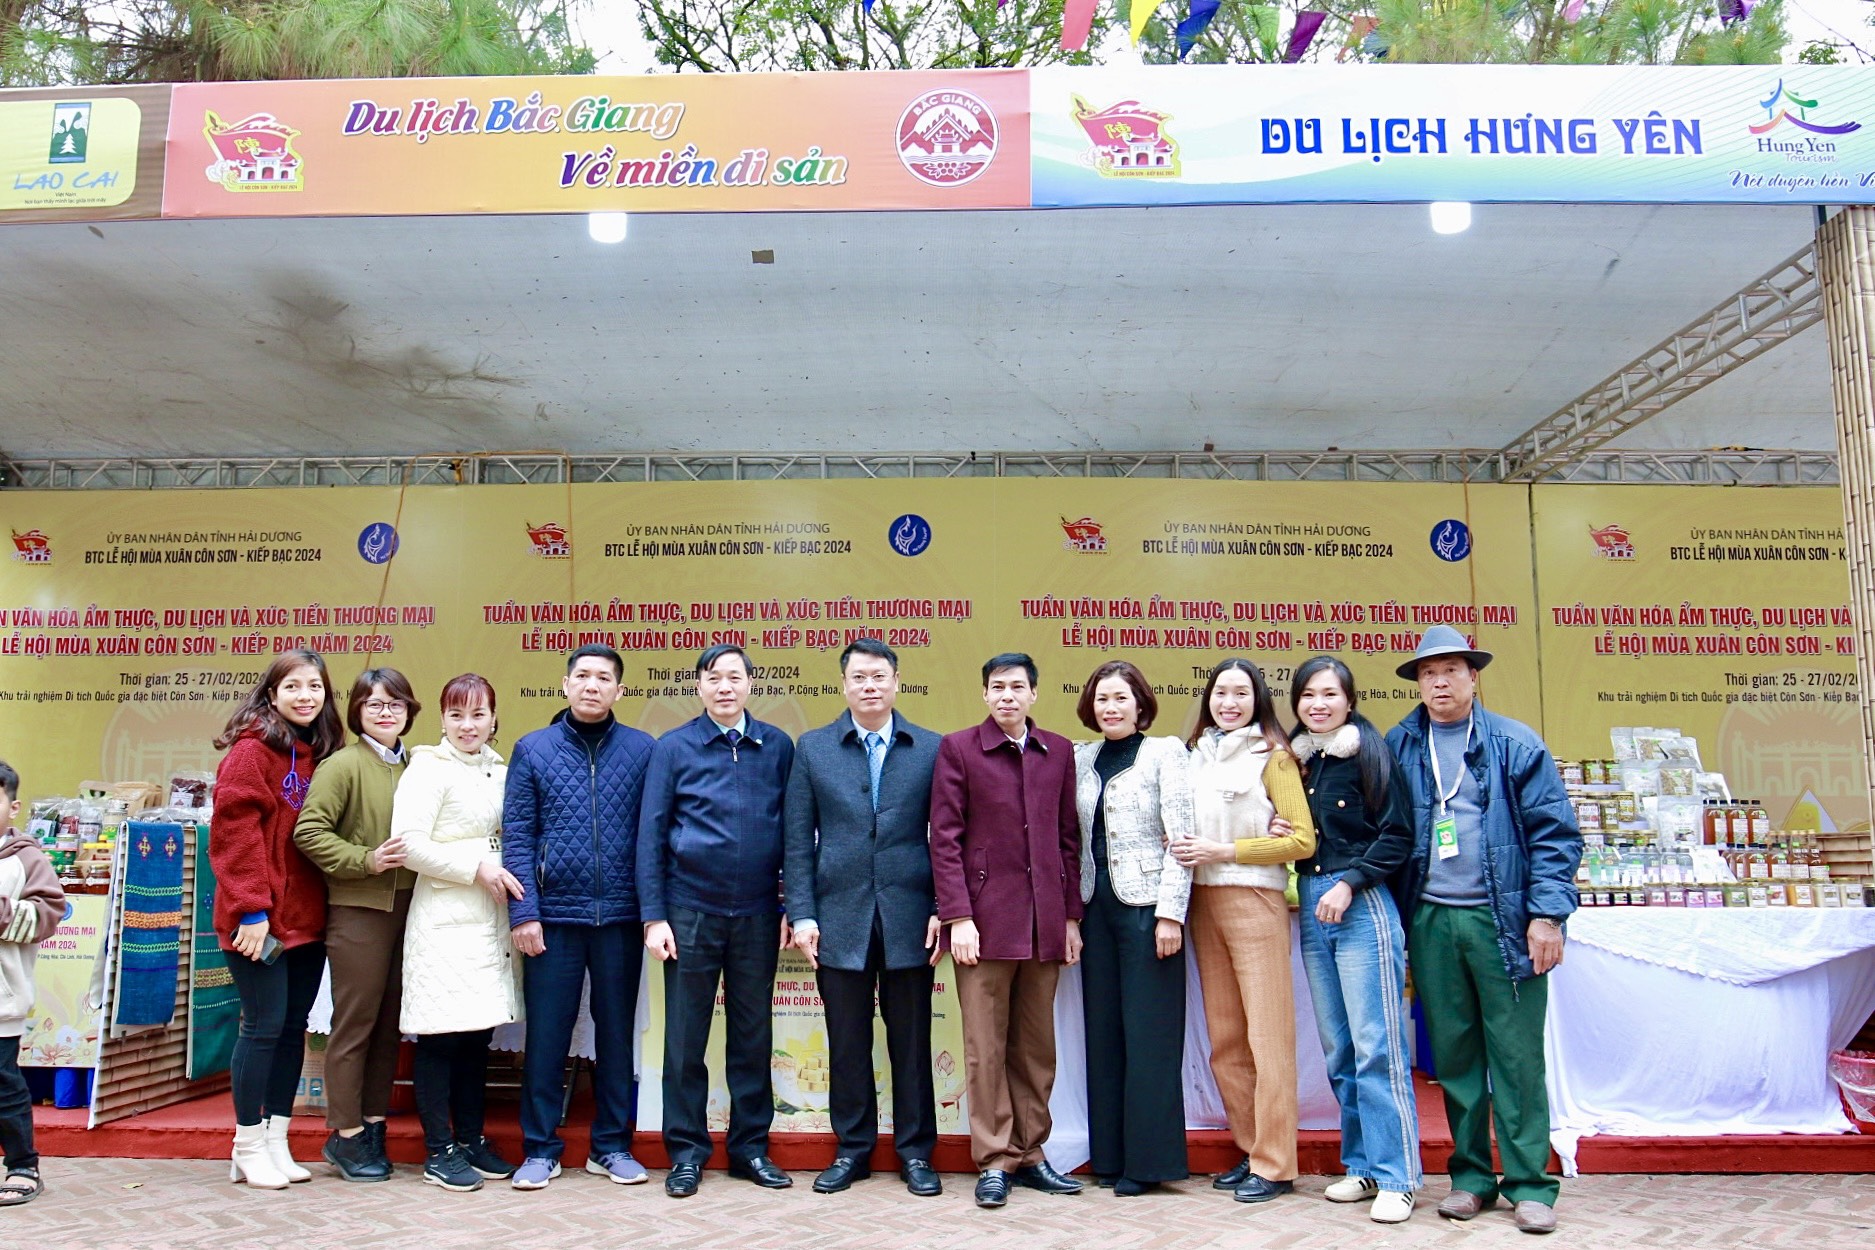 Bắc Giang tham gia quảng bá tại Tuần Tuần Văn hóa ẩm thực, Du lịch và xúc tiến Thương mại tại Lễ hội mùa xuân Côn Sơn – Kiếp Bạc 2024